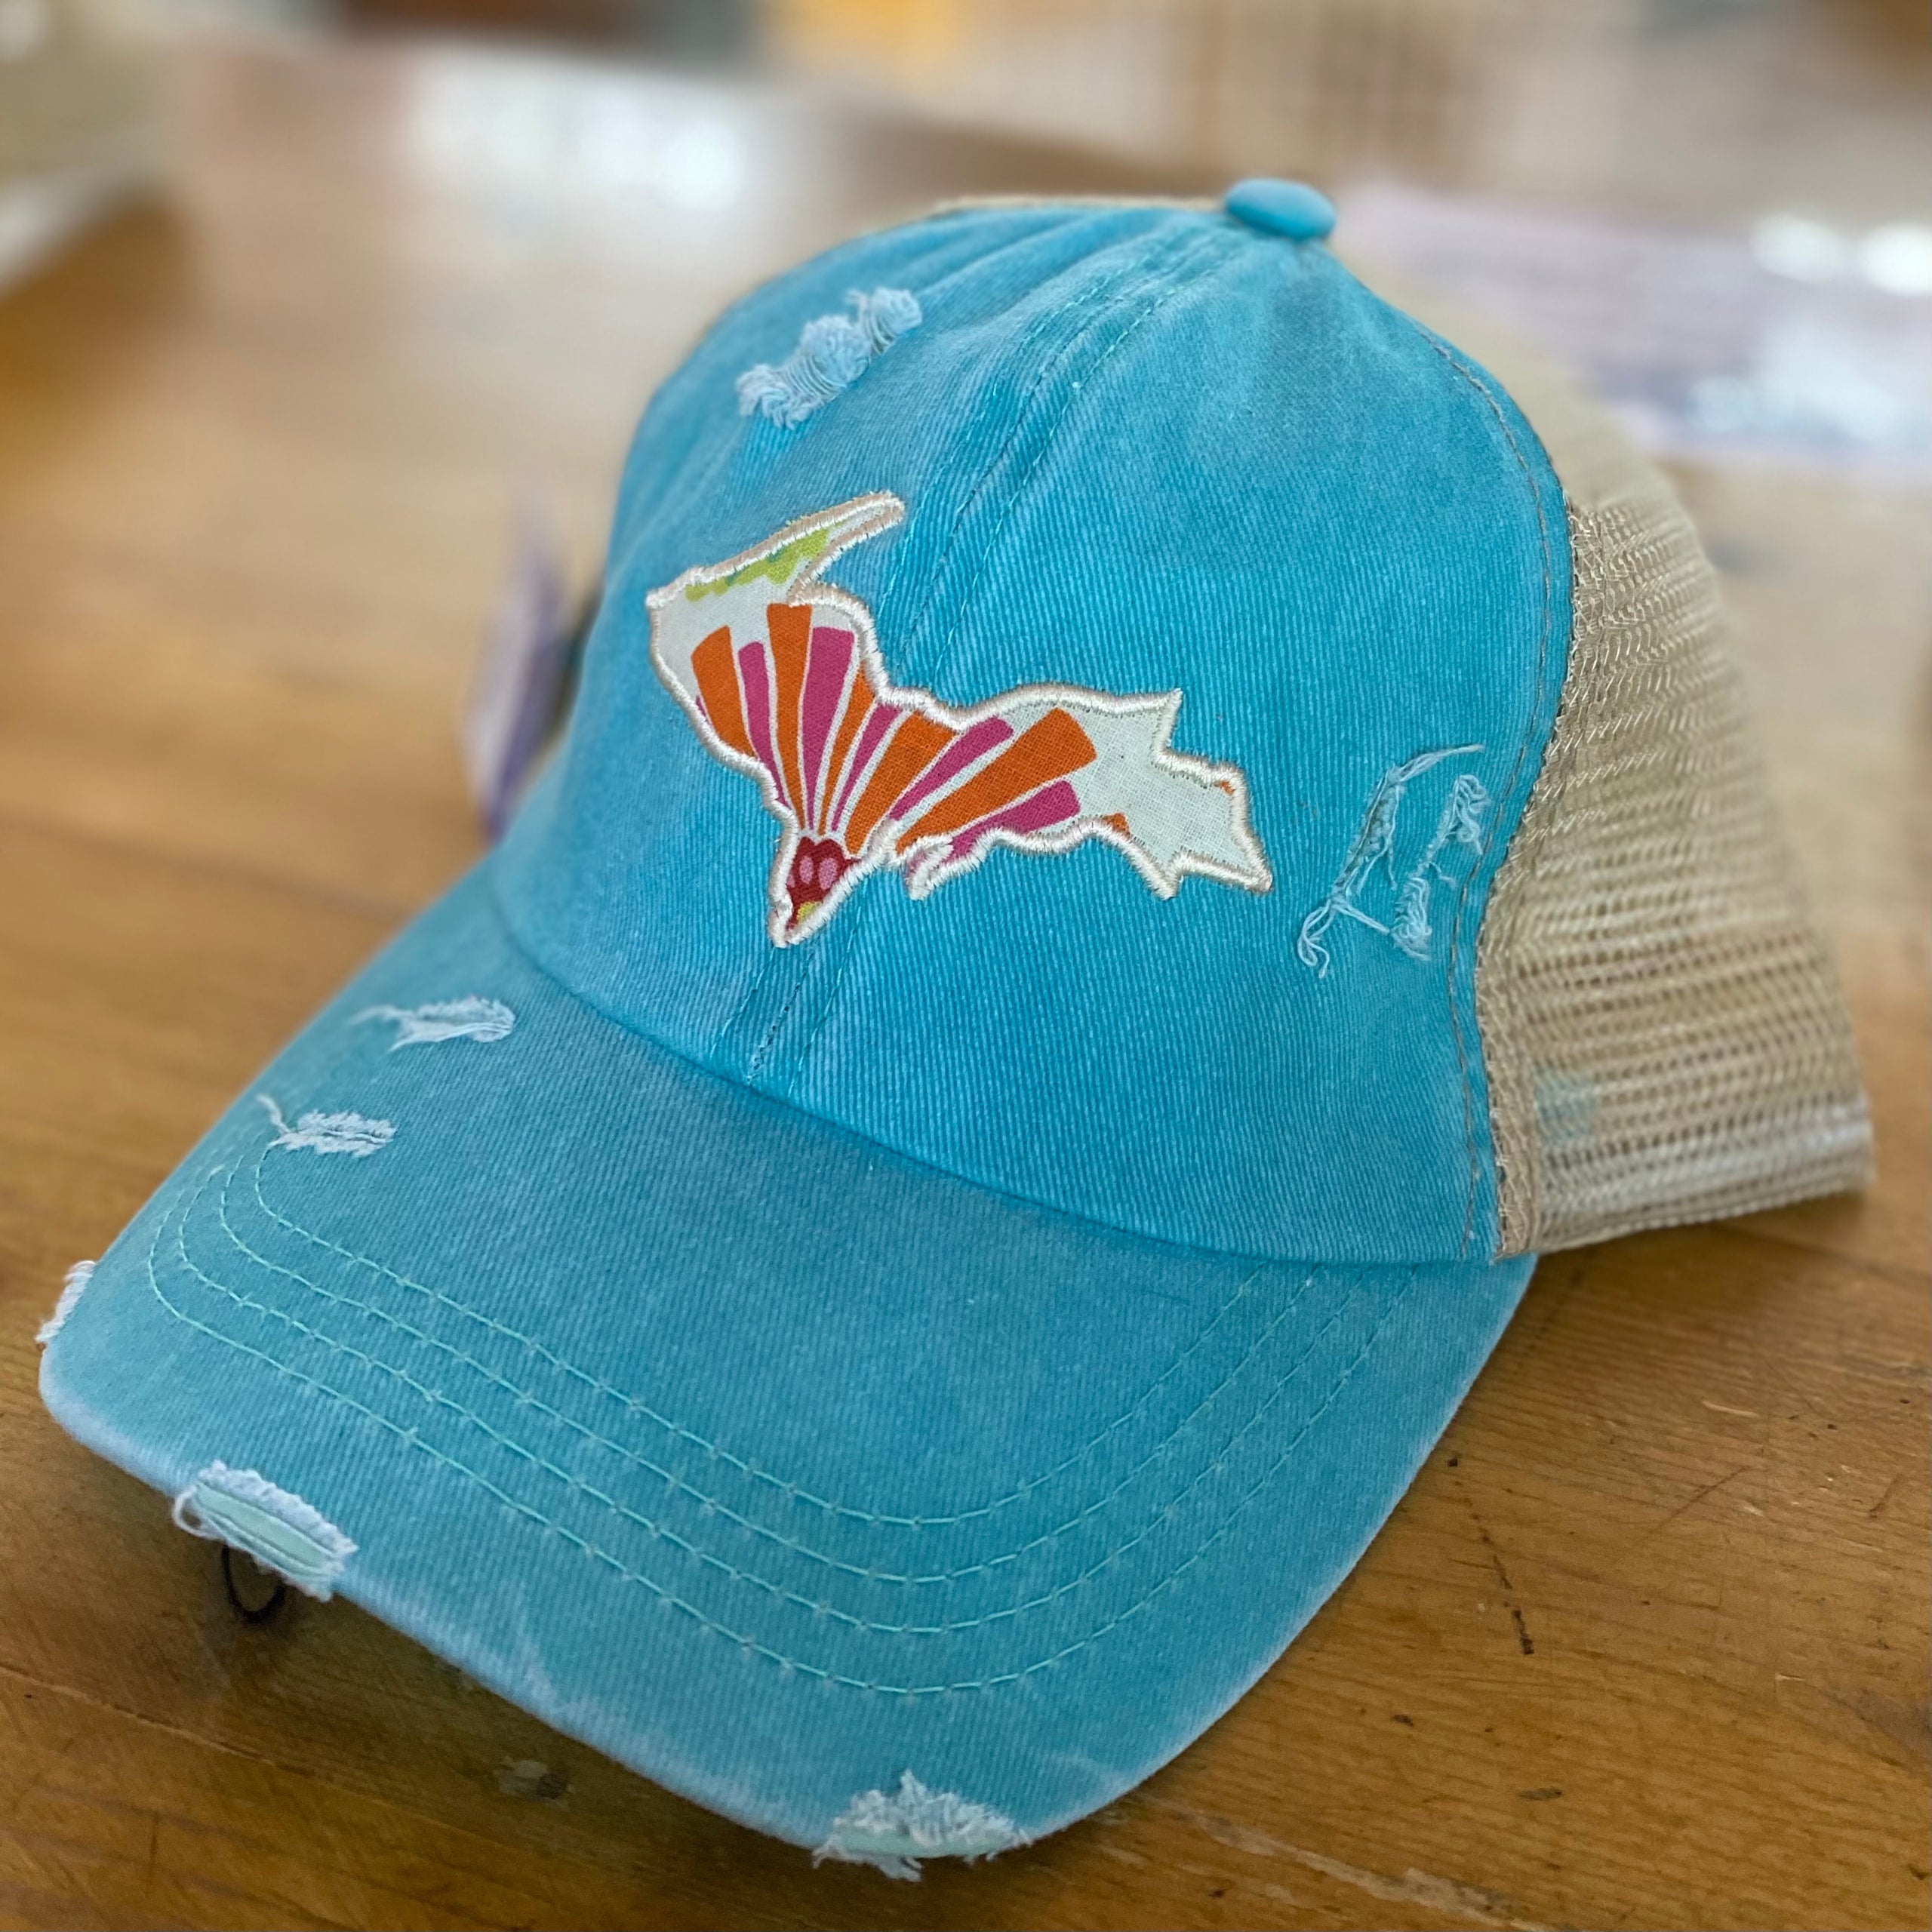 Fish Hook Hat | Distressed Baseball Cap or Ponytail Hat | Fishing Hat Black Ponytail